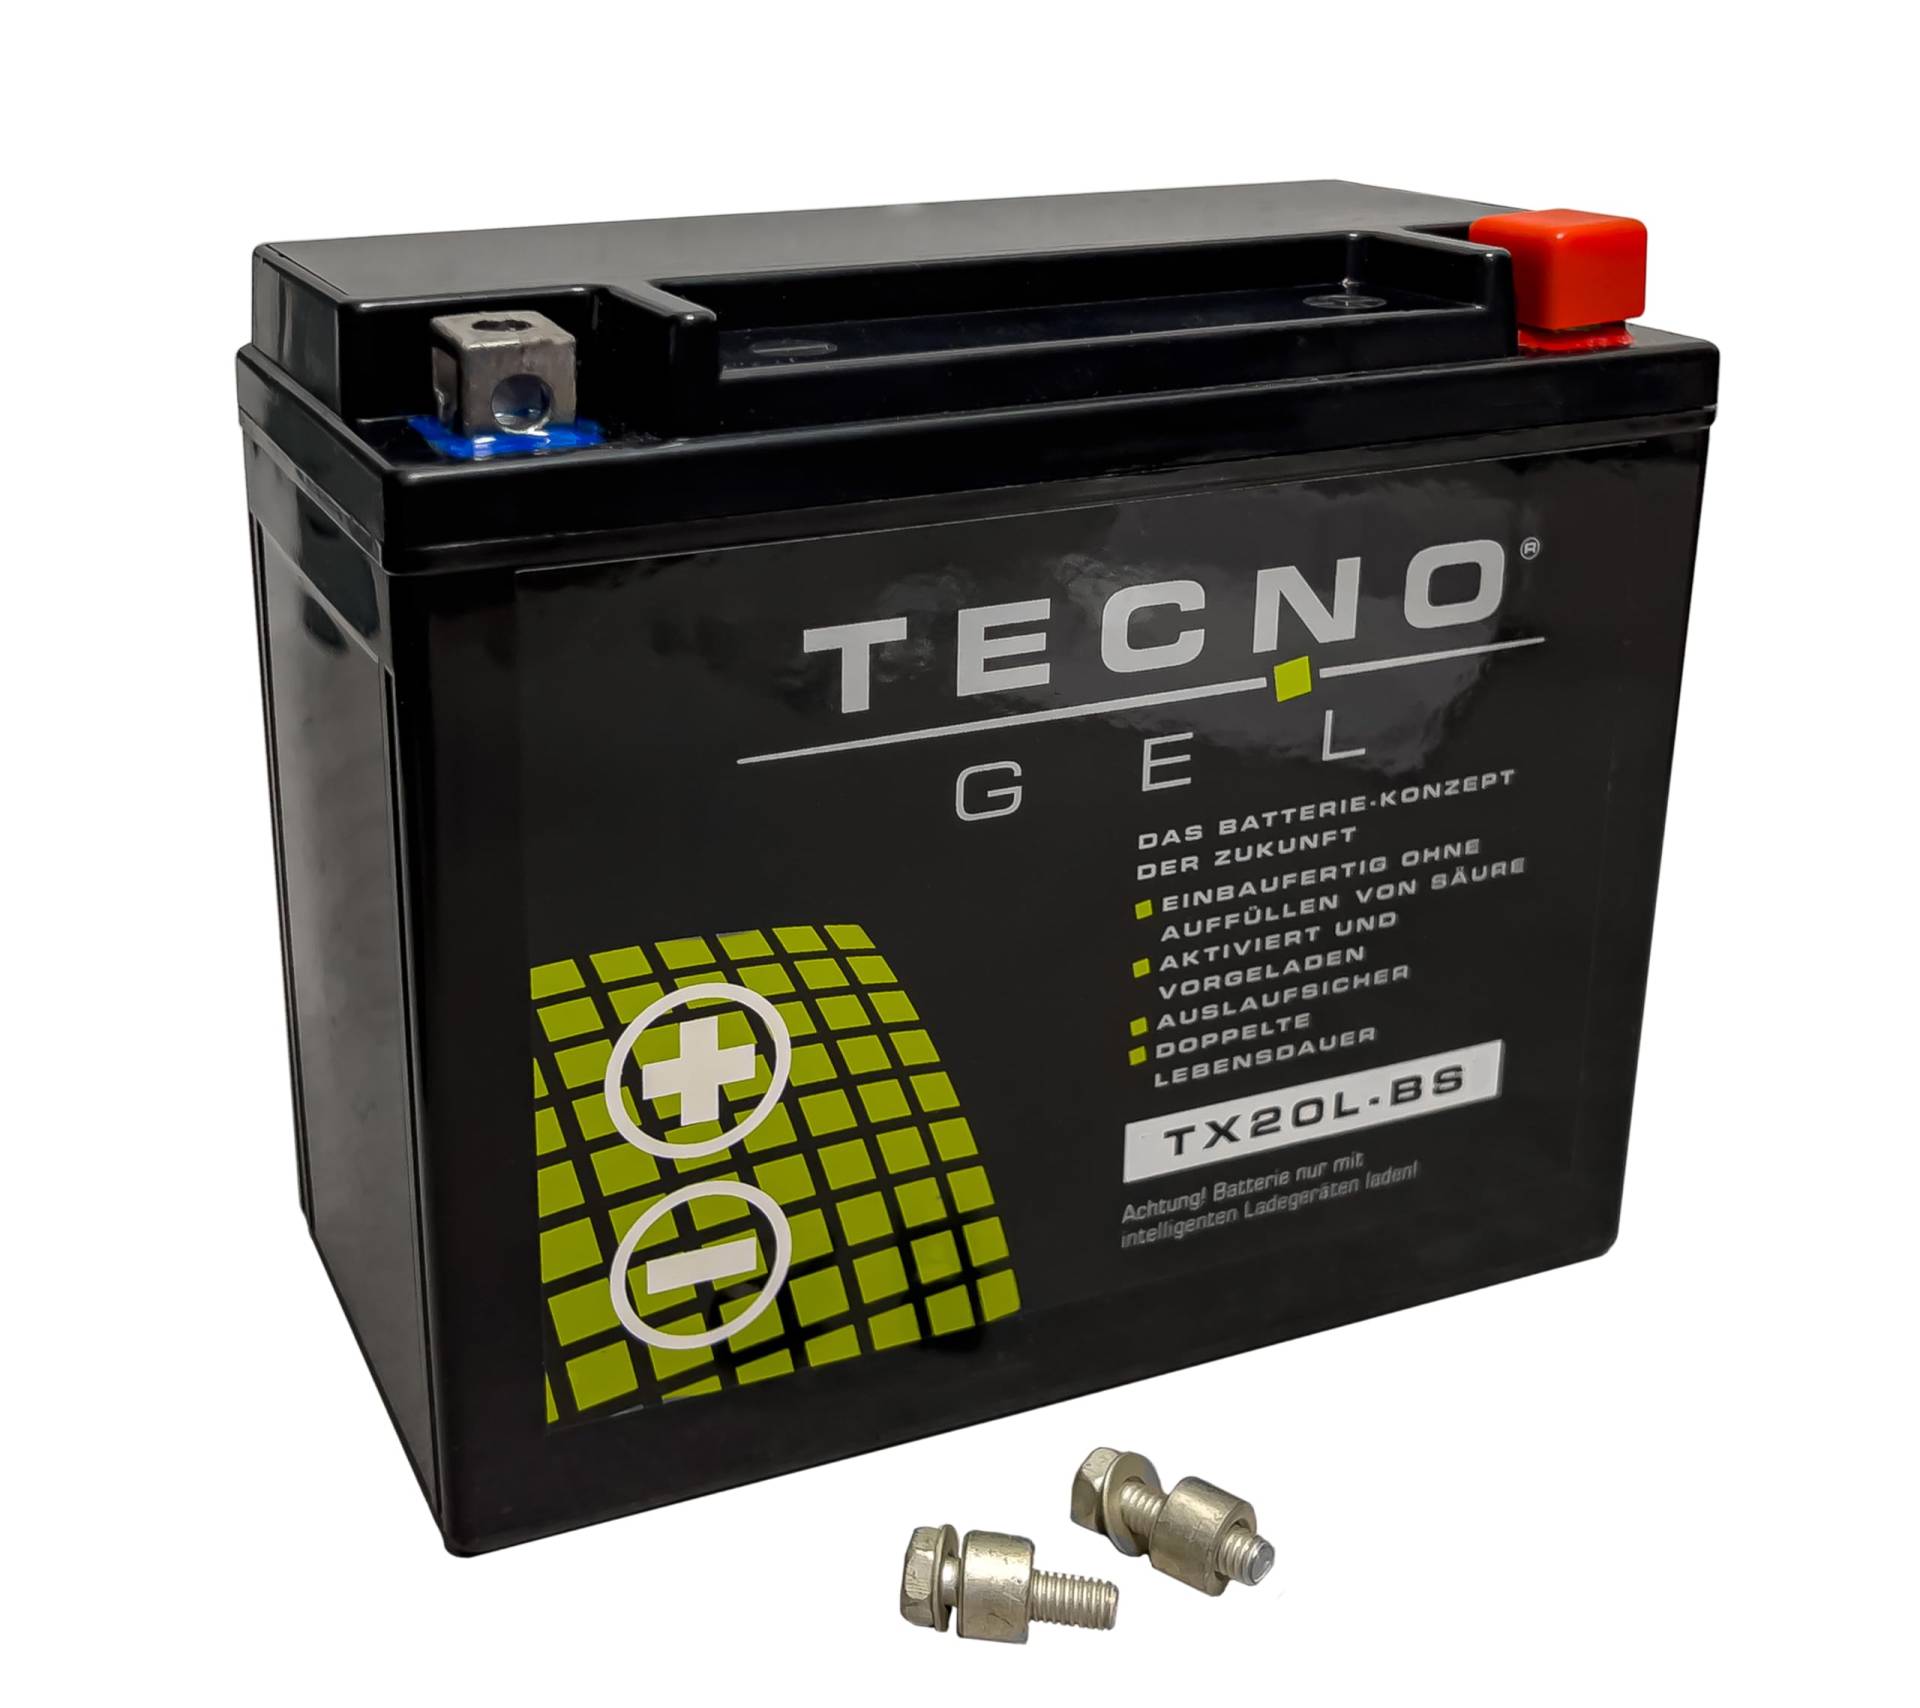 TECNO-GEL Motorrad-Batterie für YTX20L-BS für CFMOTO CF 500, Cforce 500/800 2009-2016, 12V Gel-Batterie 20Ah (DIN 82000), 175x87x155 mm von Wirth-Federn